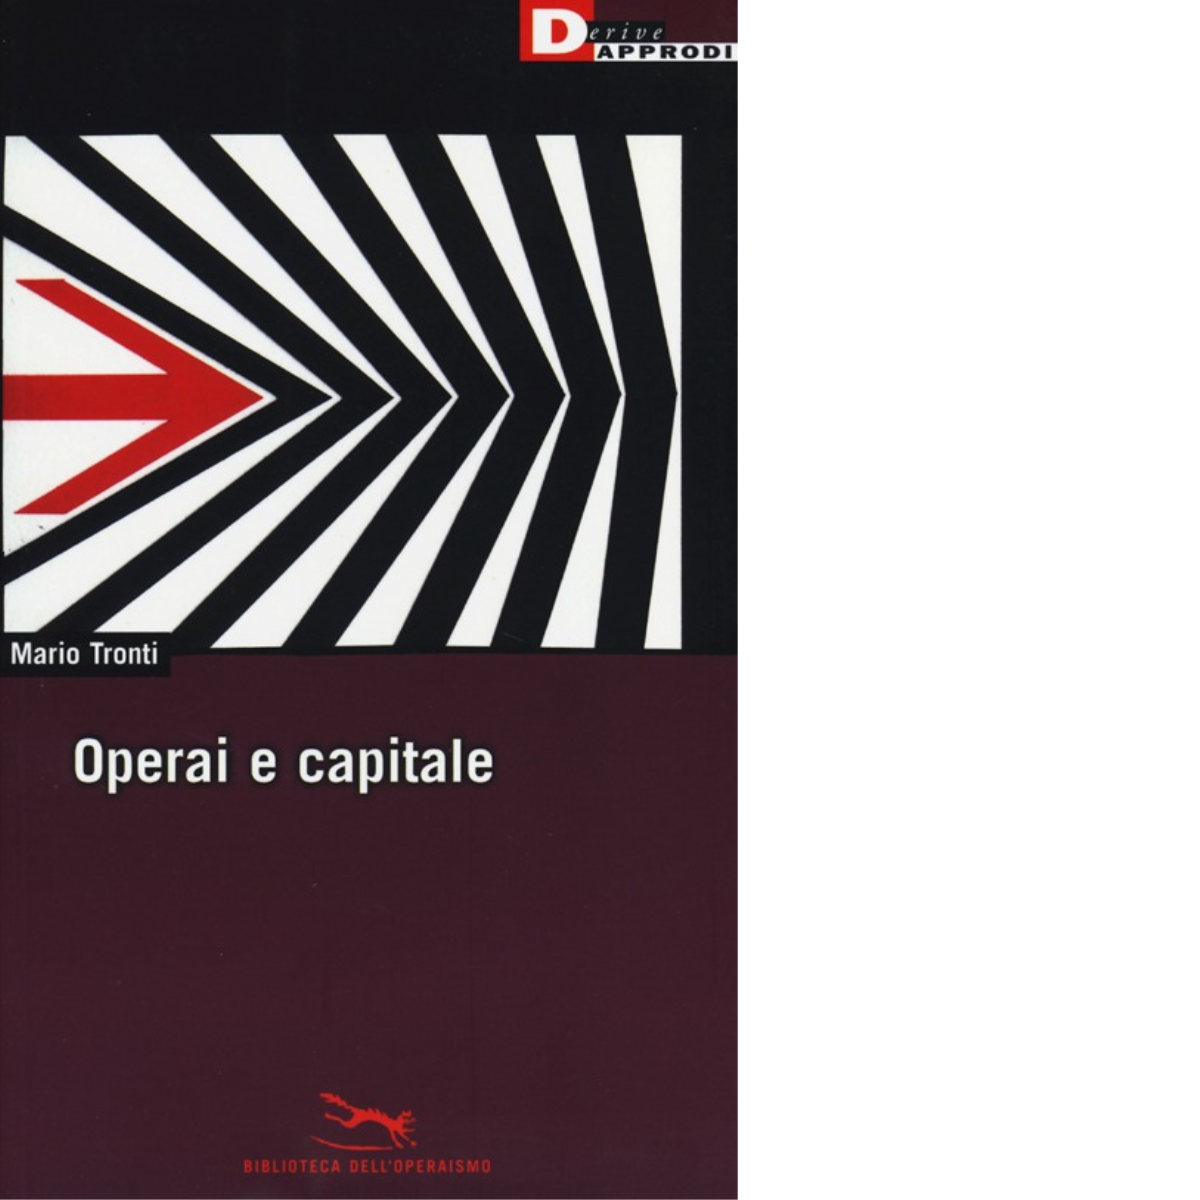 OPERAI E CAPITALE N.E. di MARIO TRONTI - DeriveApprodi editore, 2014